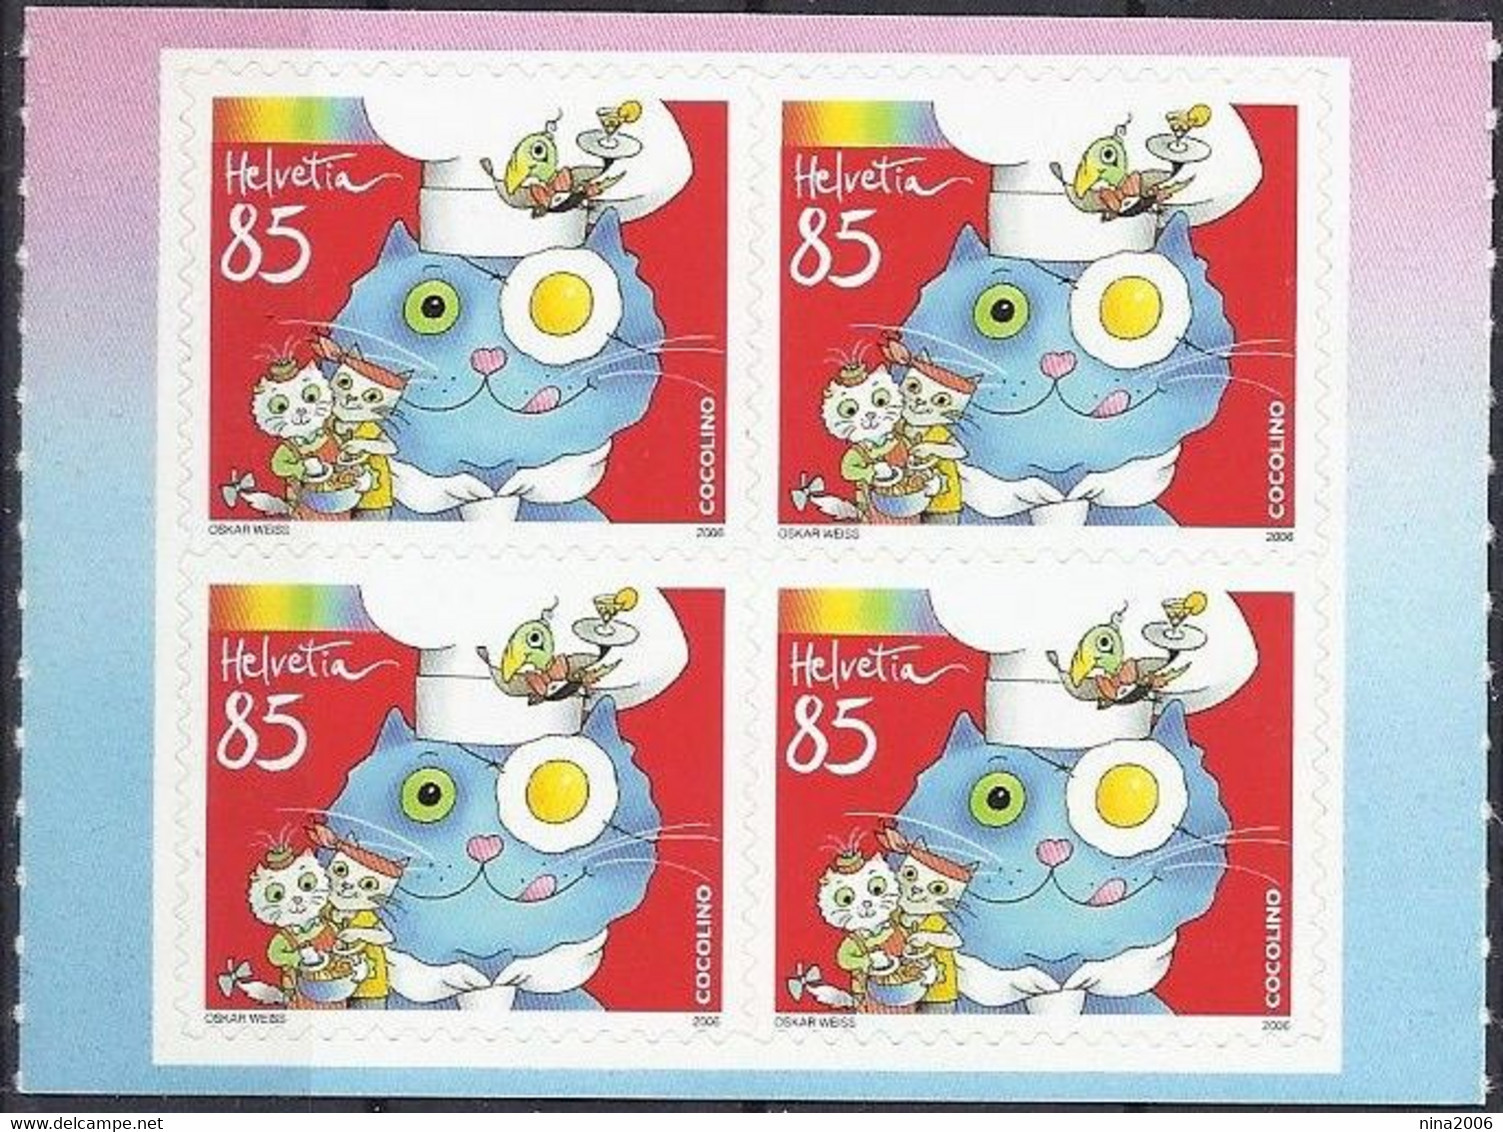 Svizzera 2006 Personaggi Per Bambini / Schweiz 2006 Kinderkochbuchfigur „Cocolino“ SOTTO FACCIALE / UNTER NOMINALE - Unused Stamps